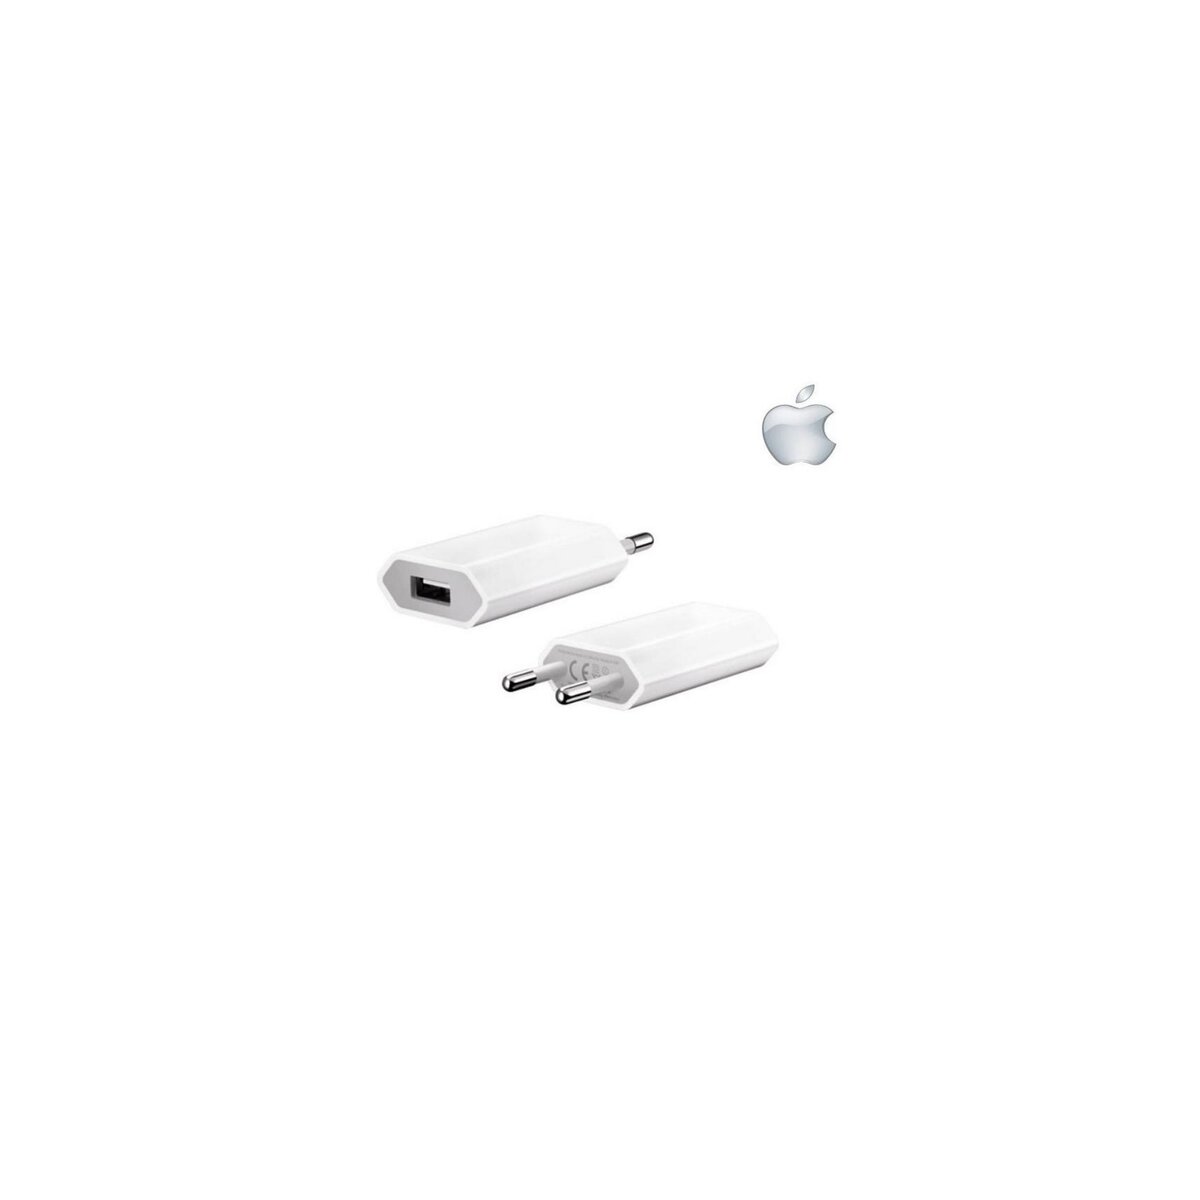  Adaptateur secteur chargeur Apple blanc puissance 1 Ampère pour iPhone